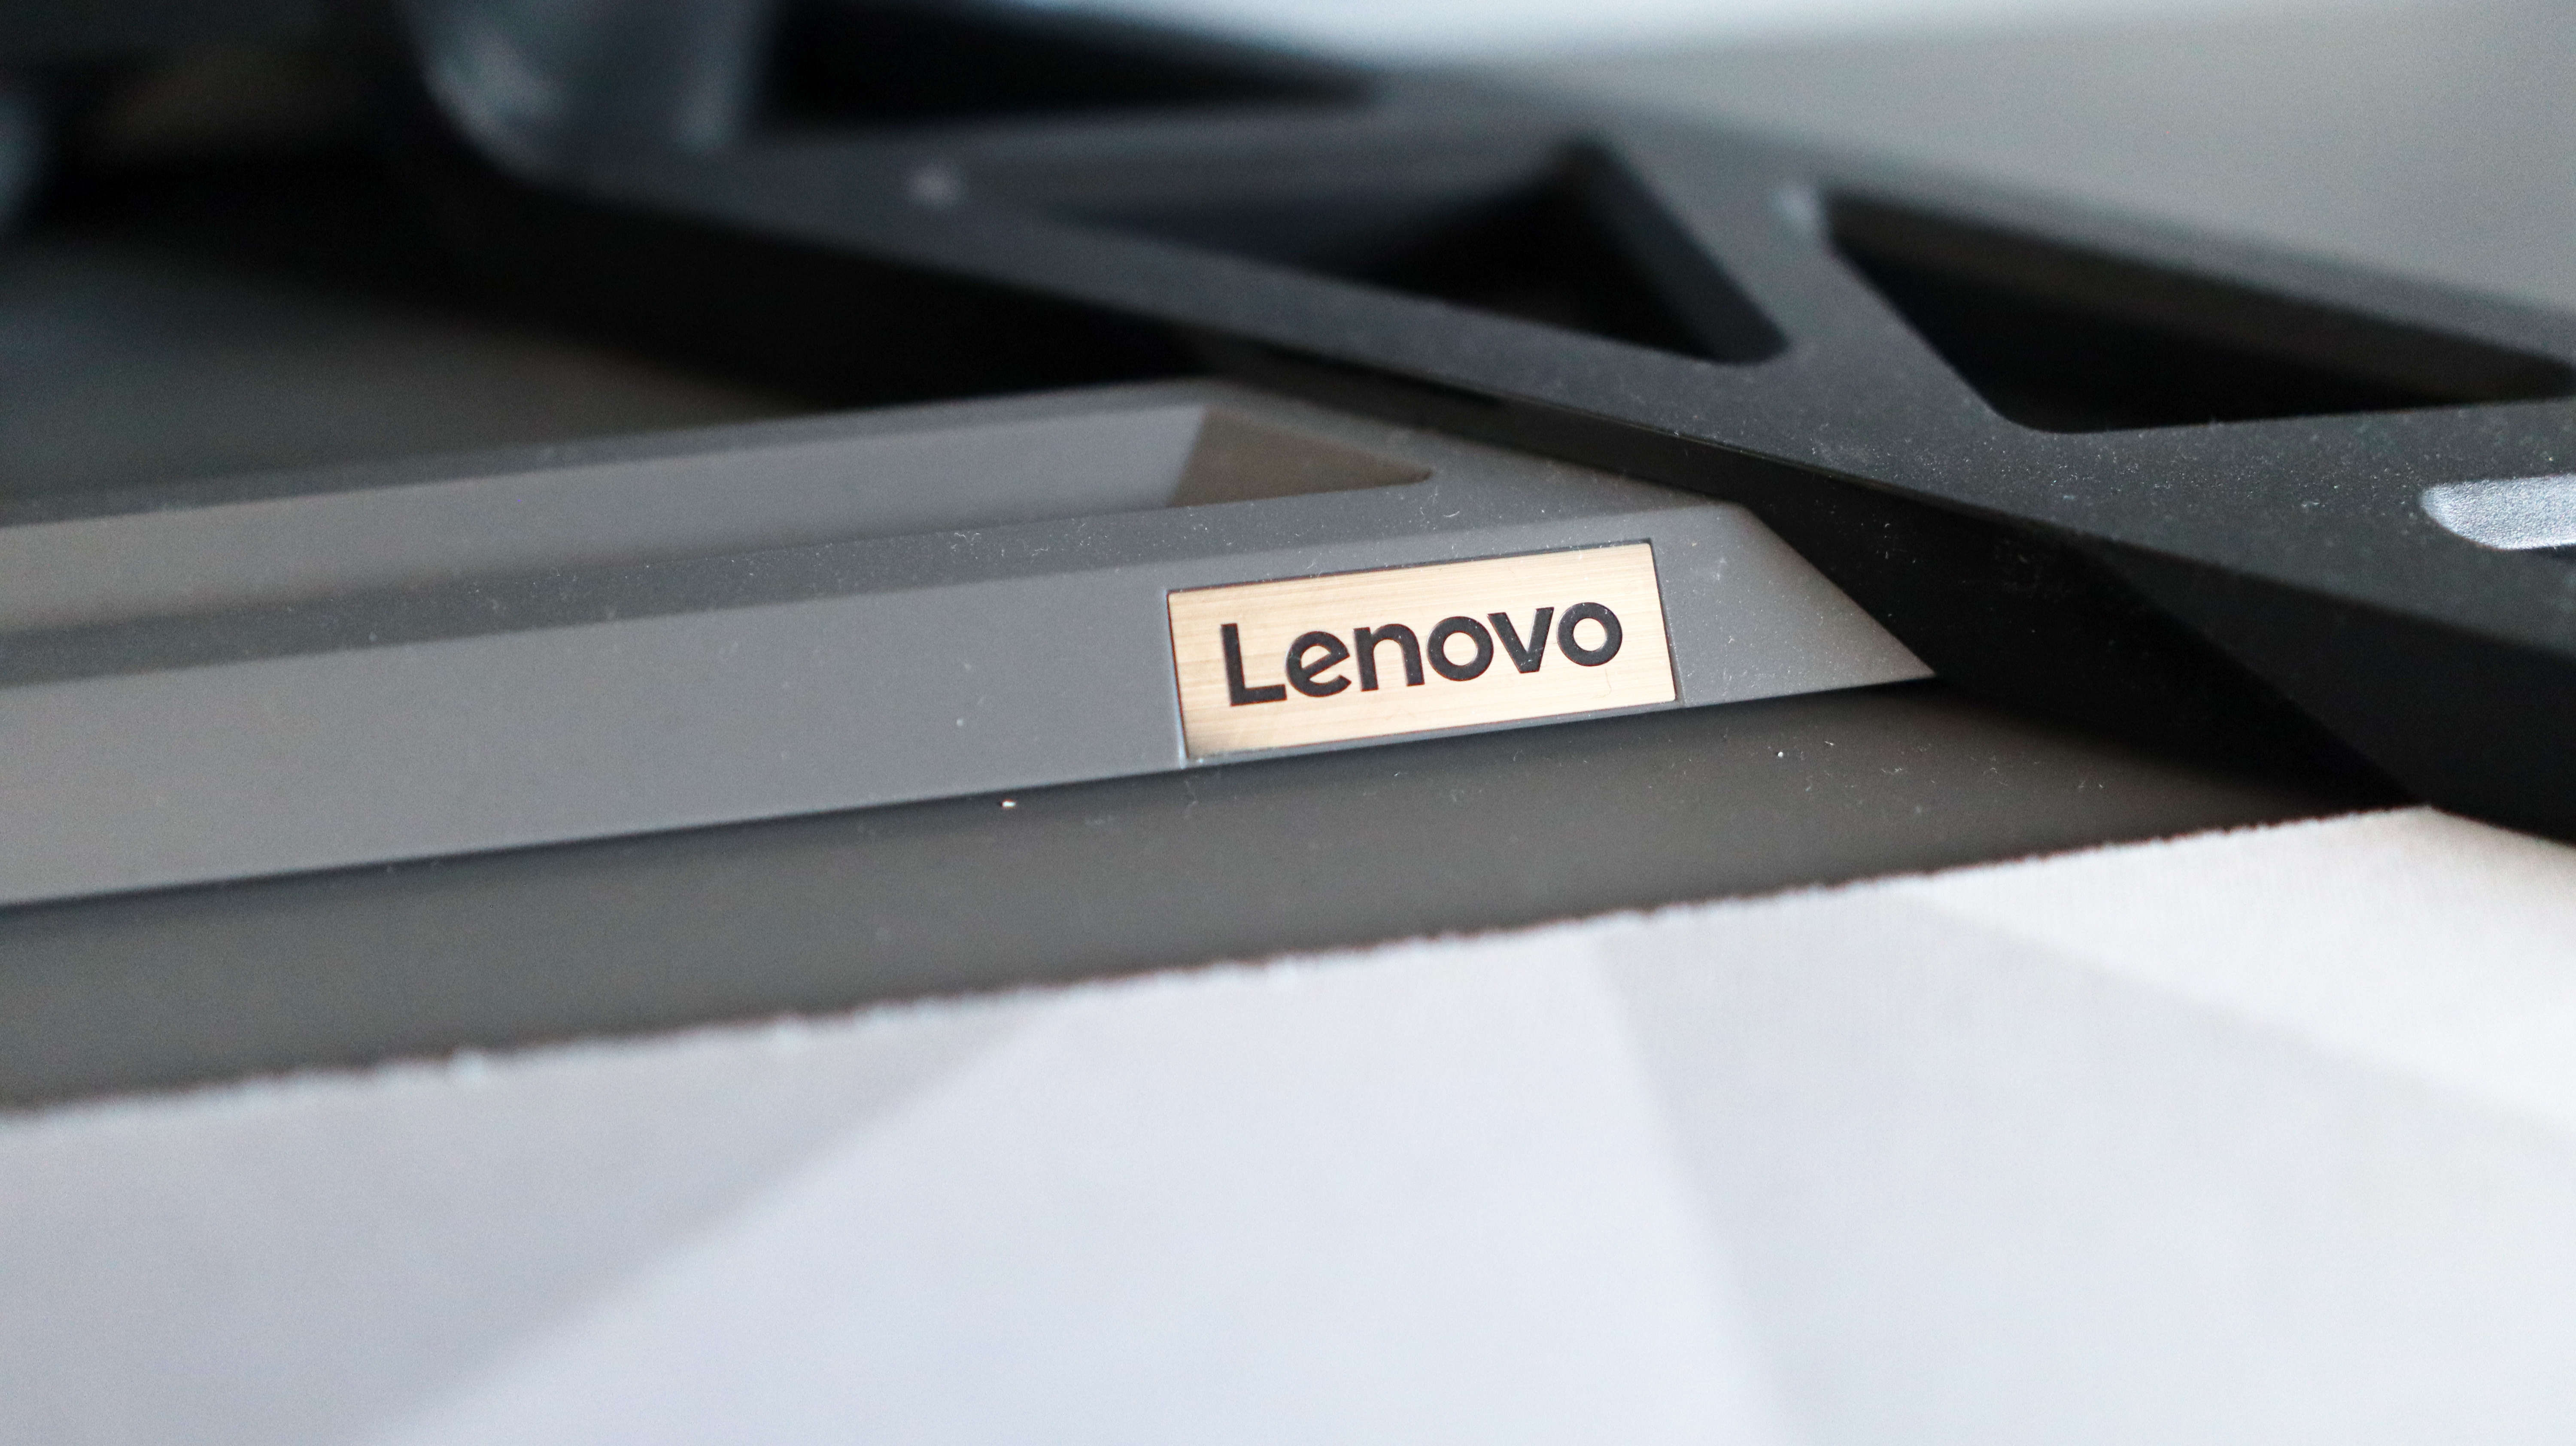 The Lenovo Legion R45w-30 ultrawide gaming monitor on a desk.